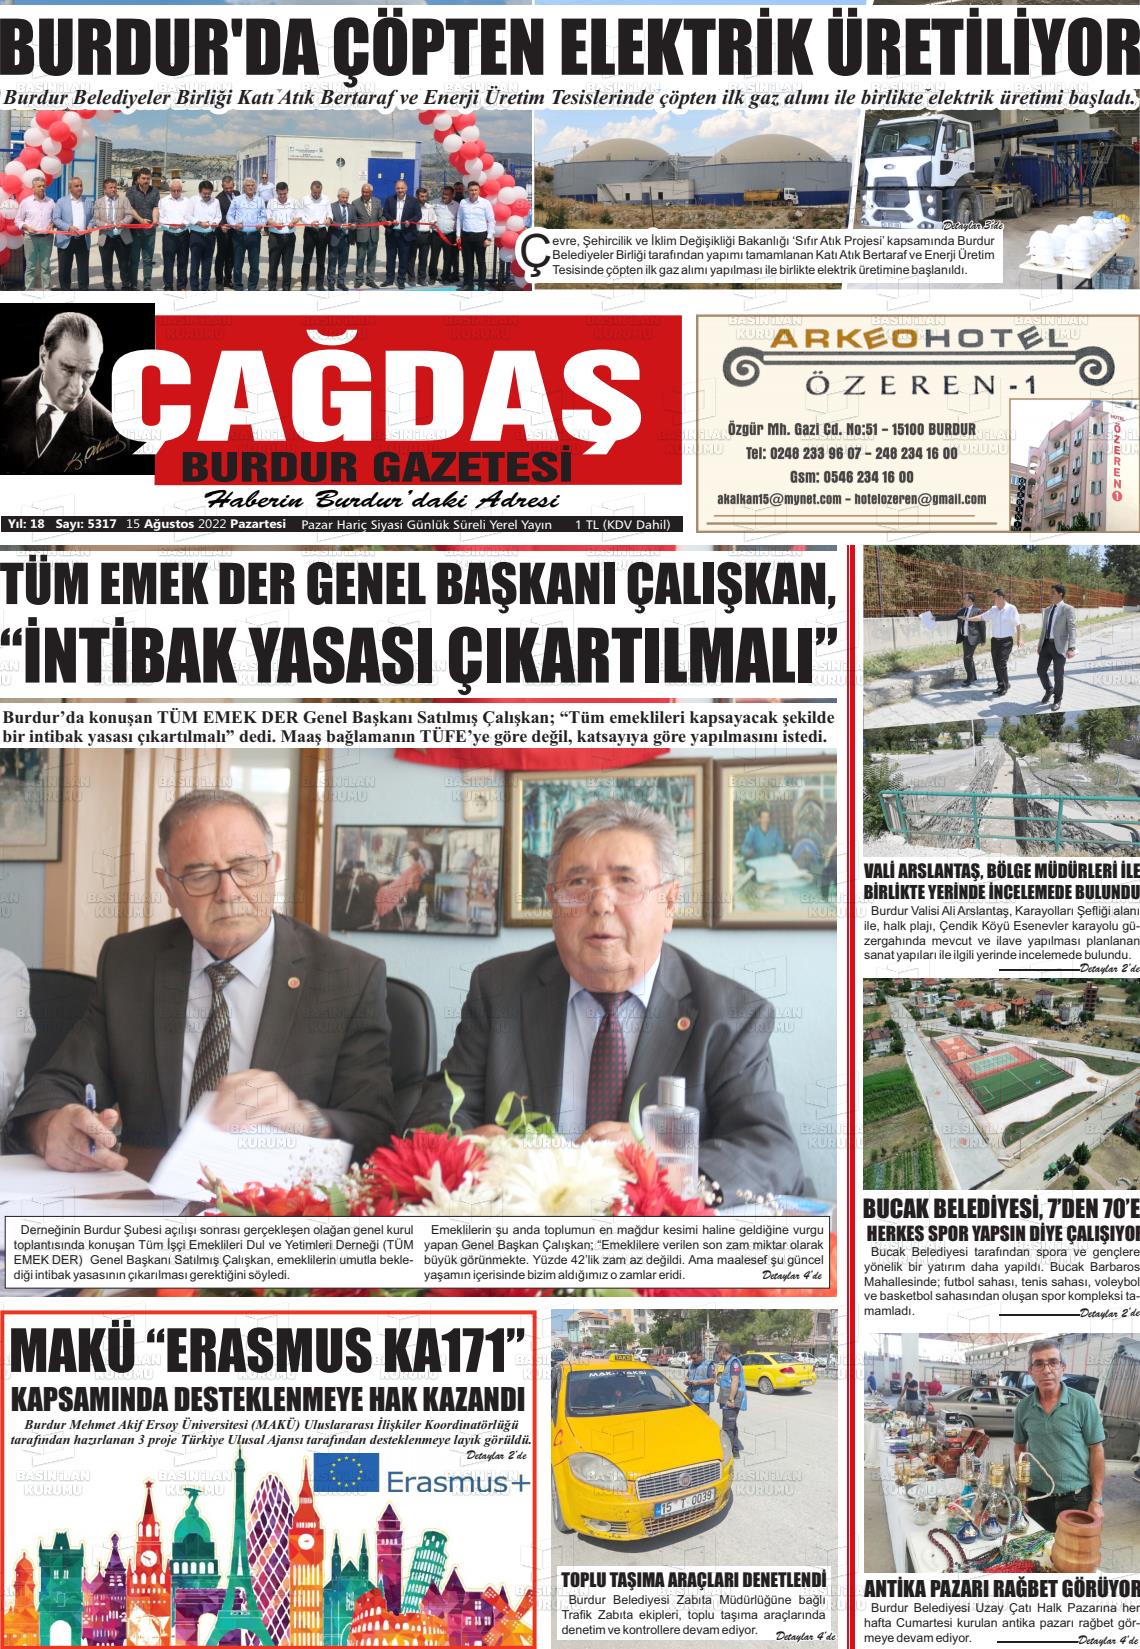 15 Ağustos 2022 Çağdaş Burdur Gazete Manşeti